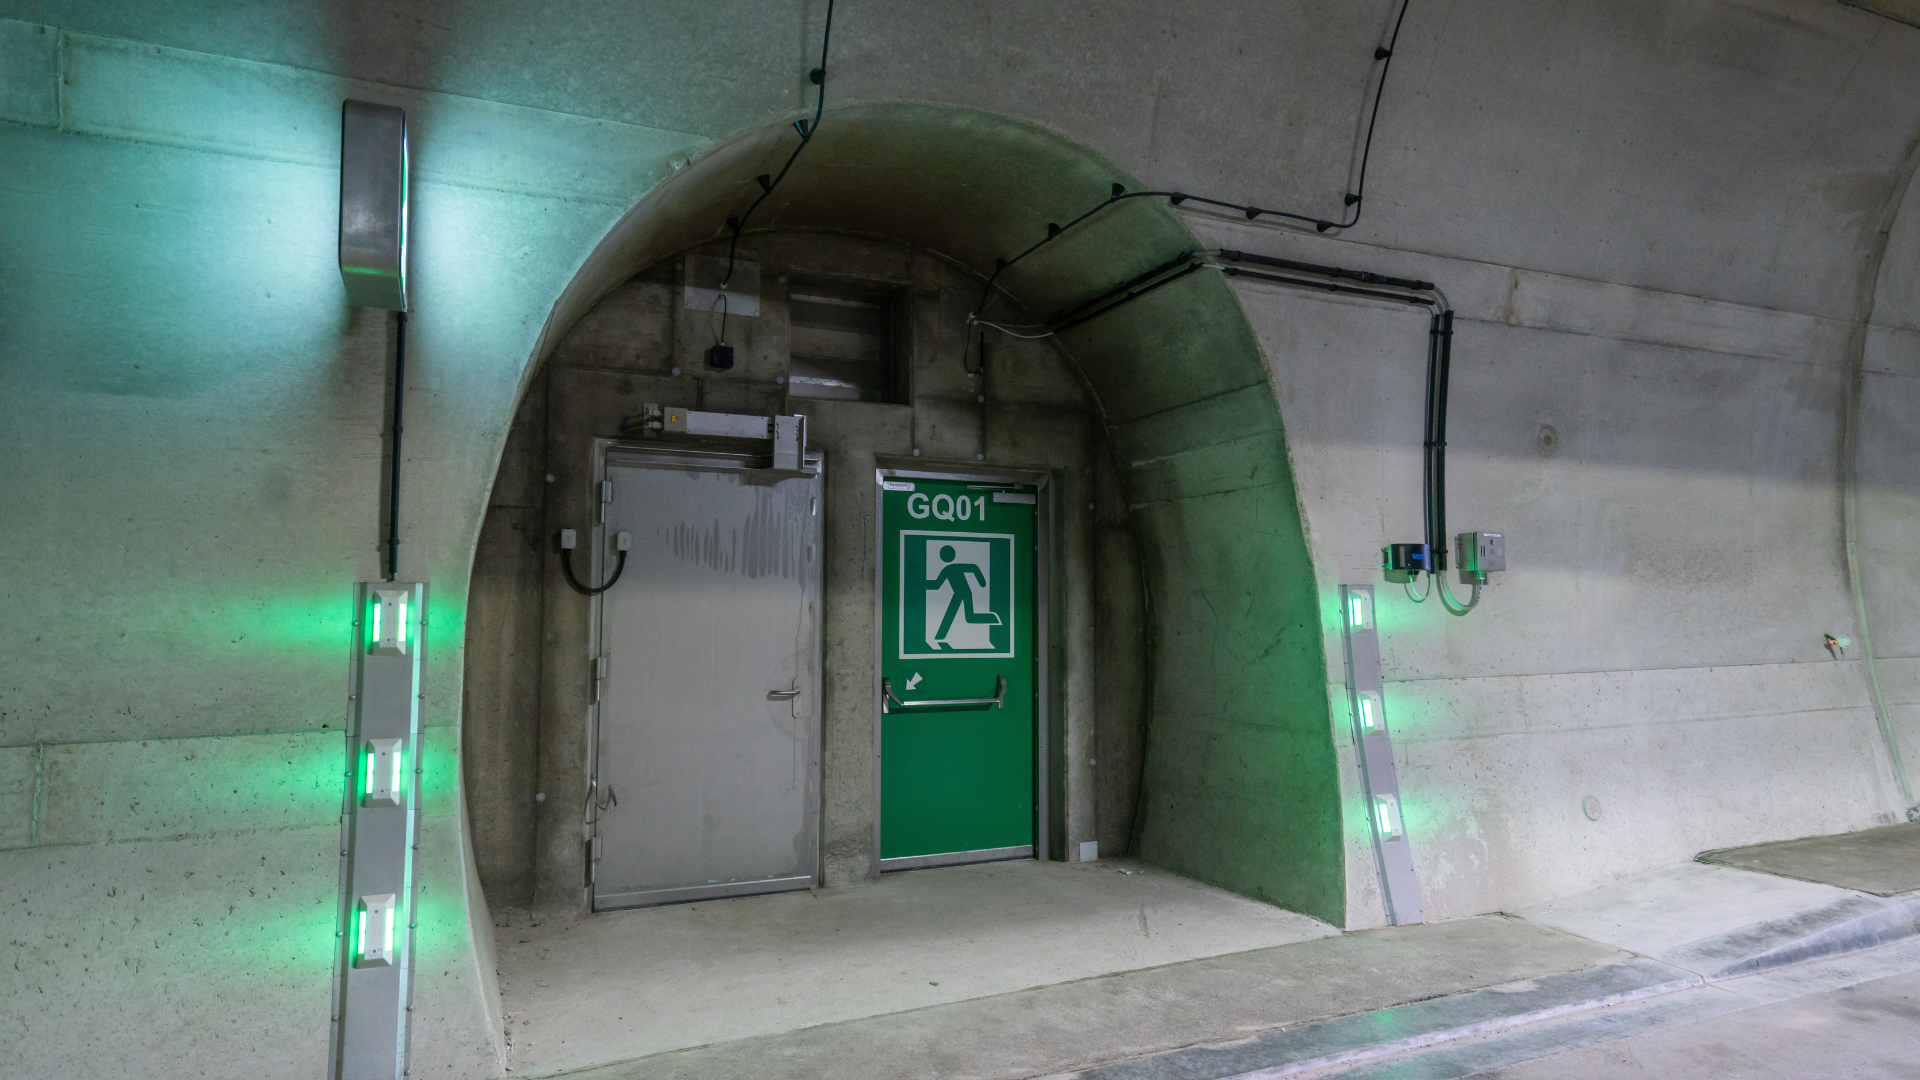 An emergency door in a modern tunnel